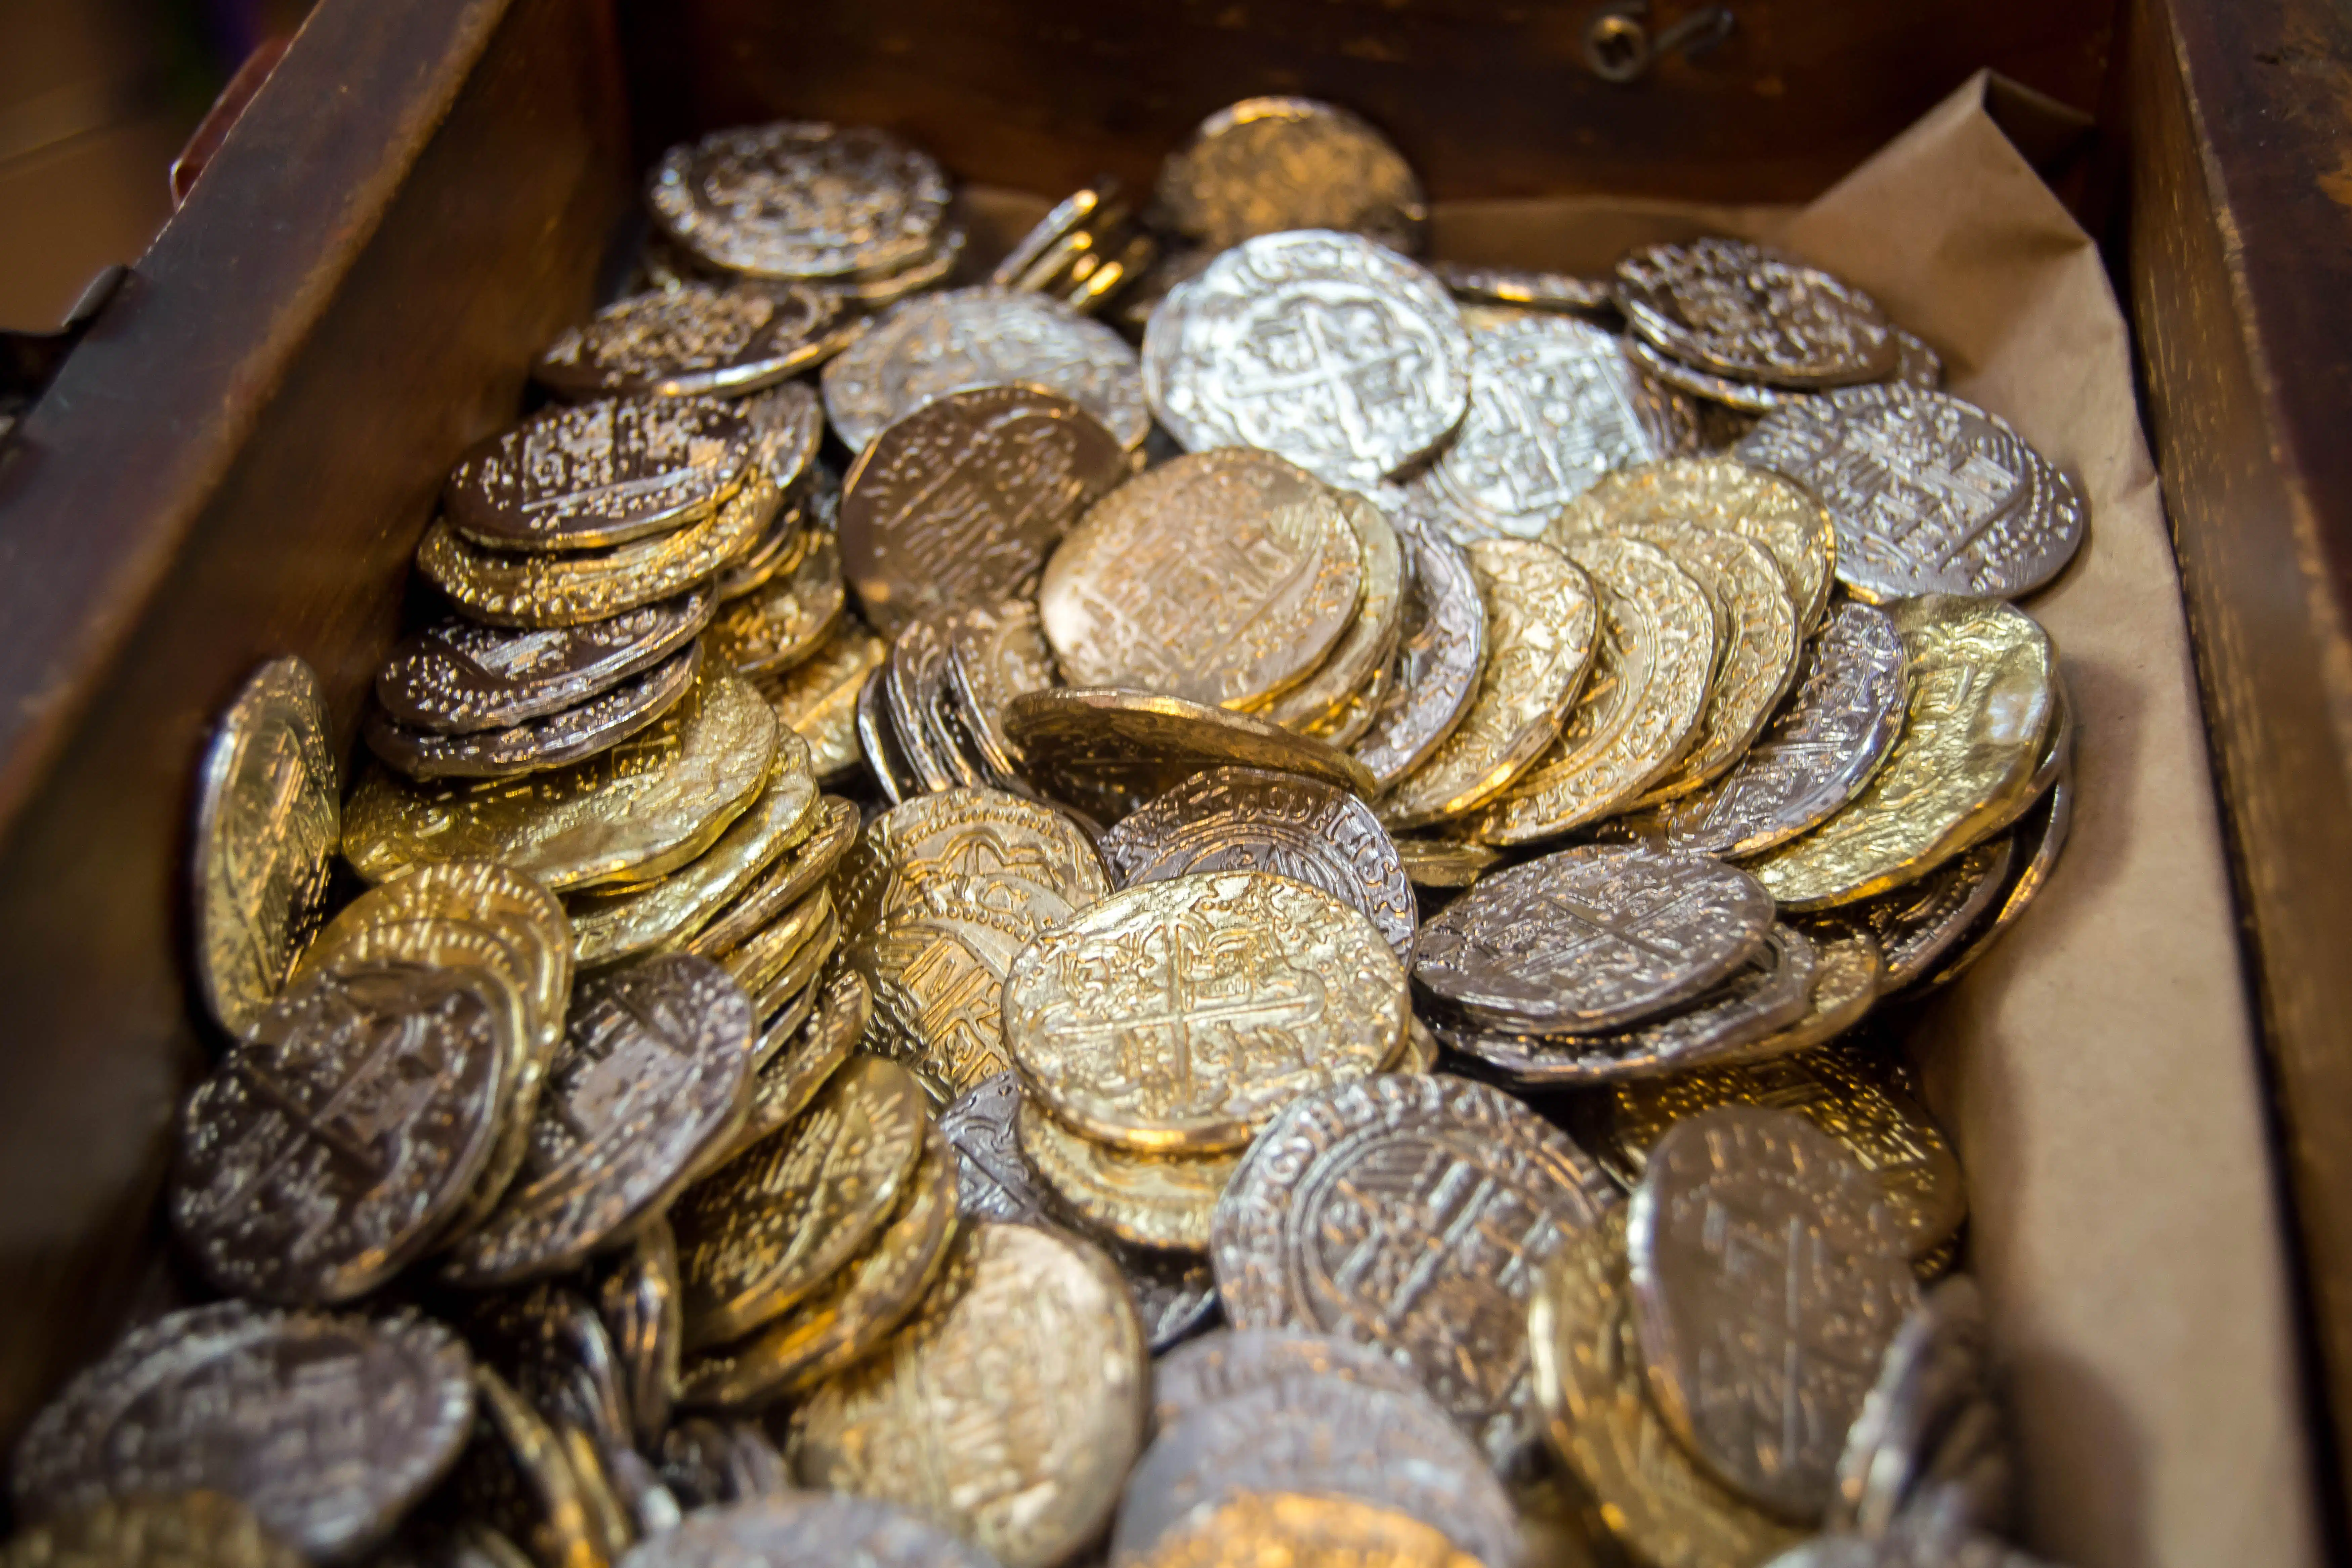 Tesouro da vida real: grupo encontra 600 moedas medievais avaliadas em R$ 930 mil